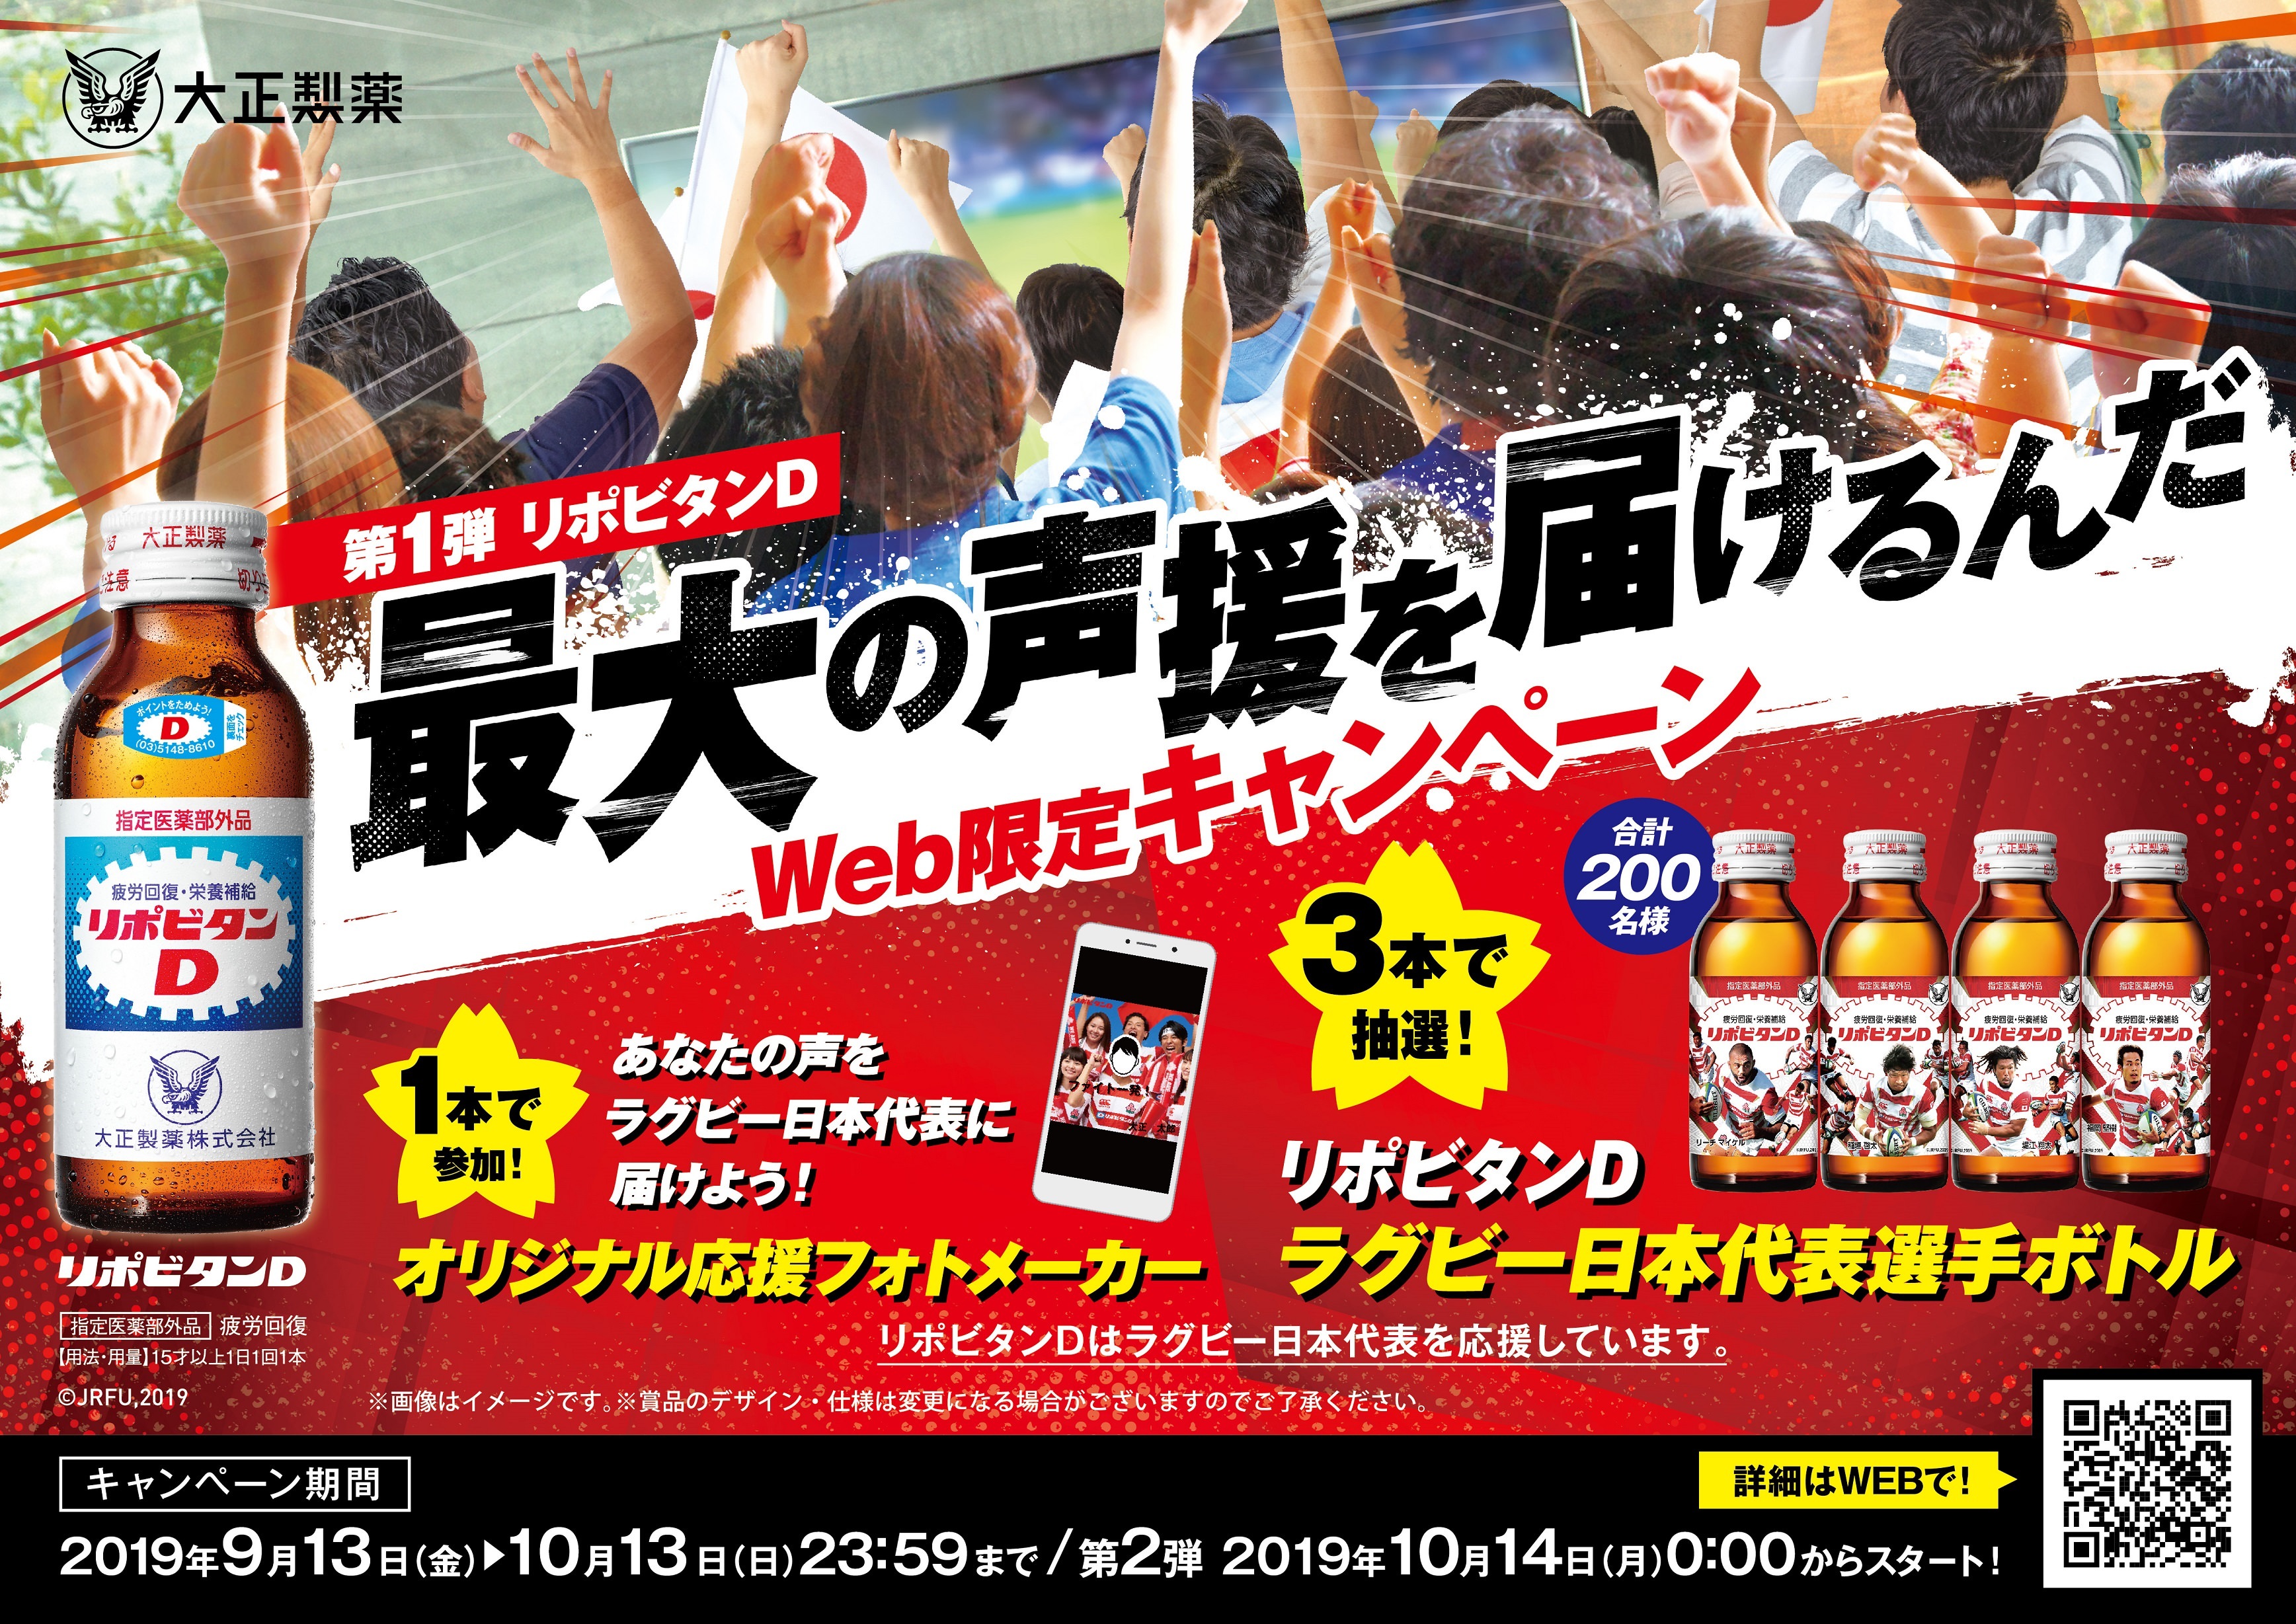 東京駅一番街でラグビーを応援しよう！
ラグビーを楽しめるおすすめ商品をご紹介！